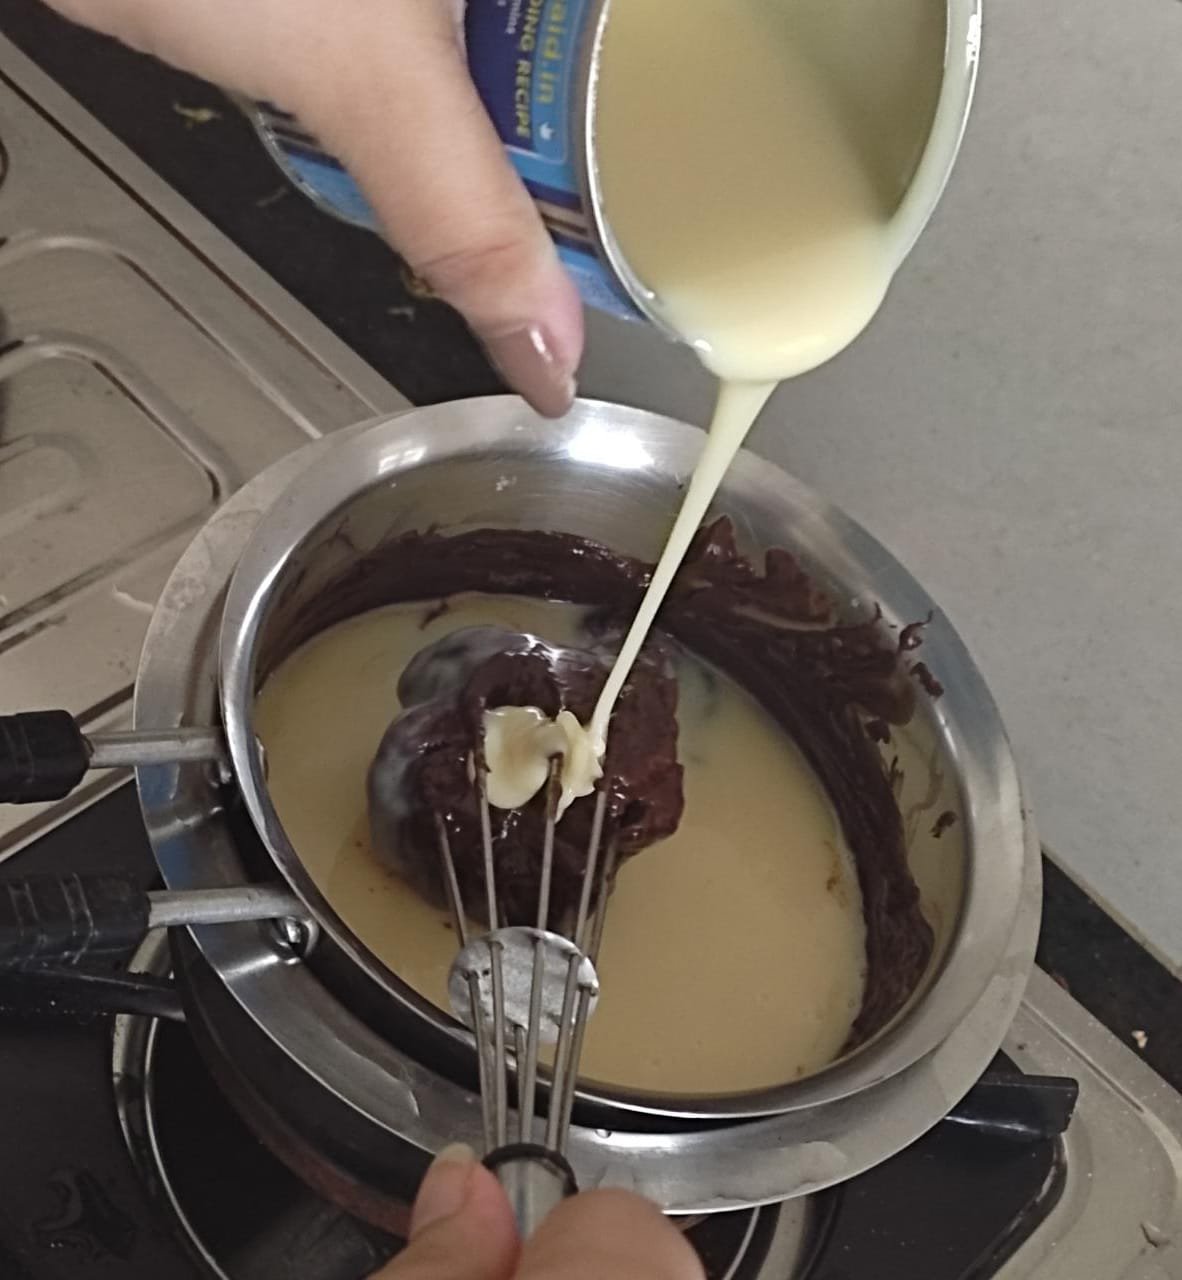 Adding condensed milk to melted dark chocolate